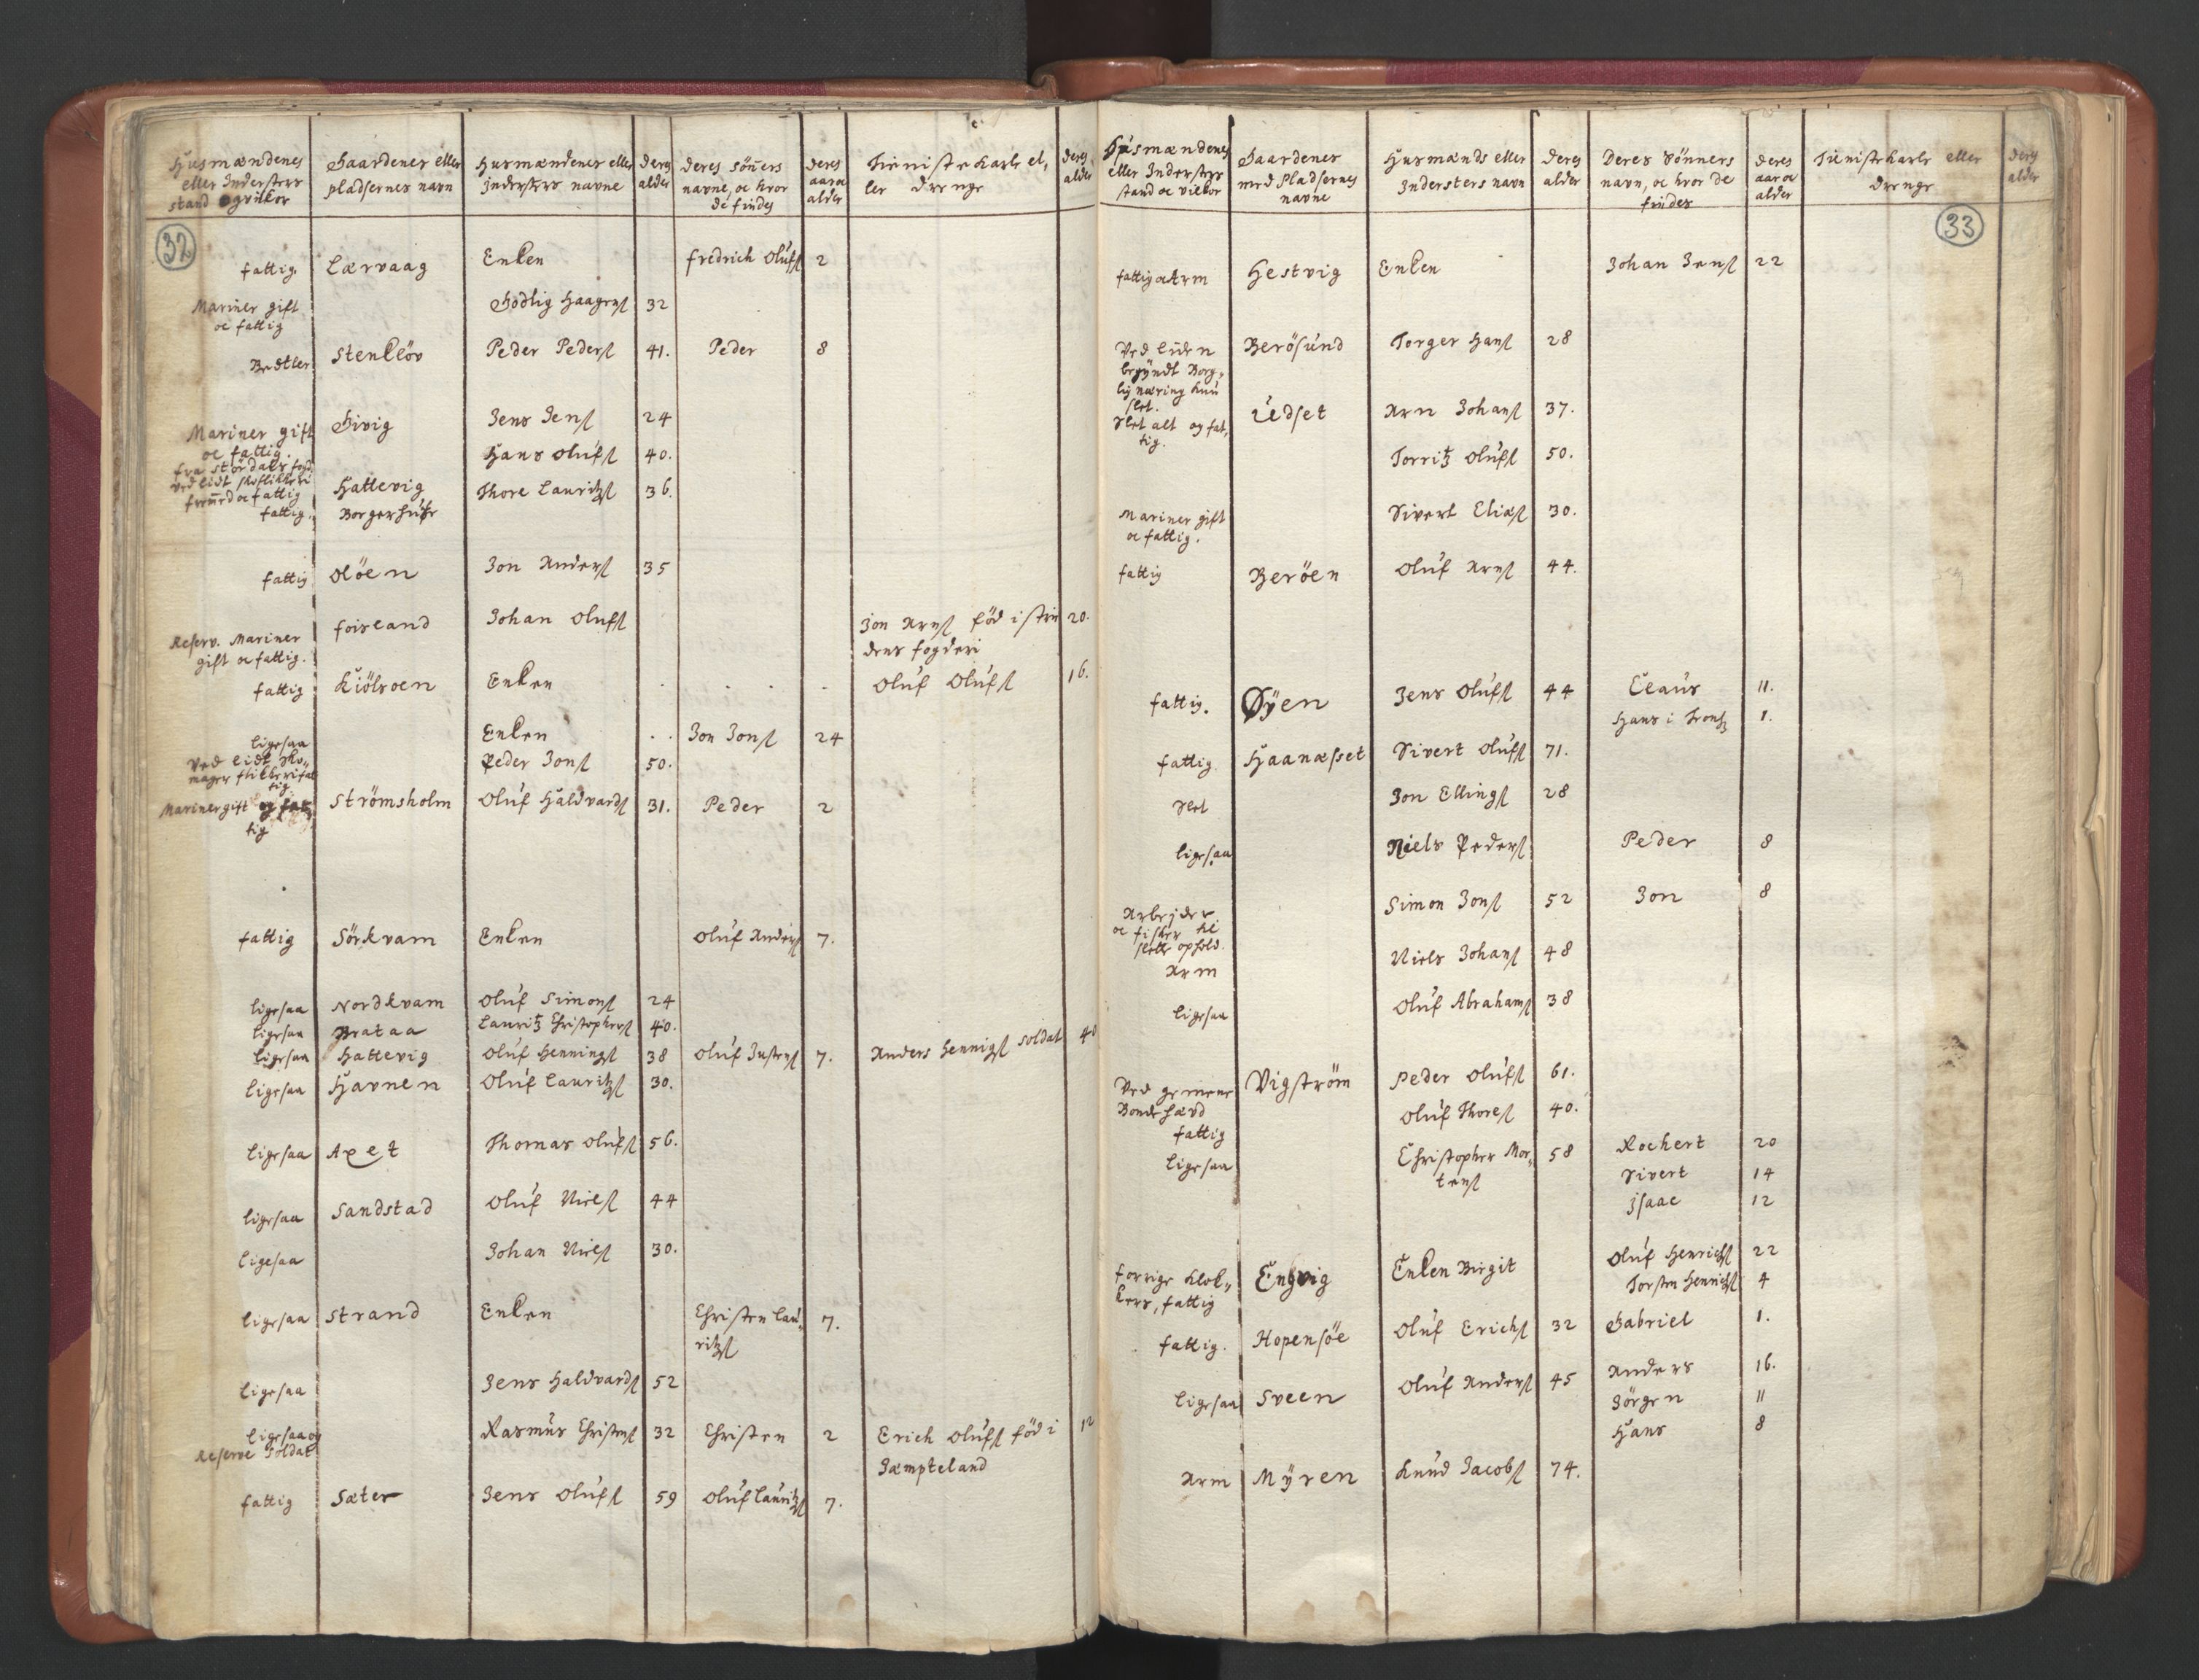 RA, Manntallet 1701, nr. 12: Fosen fogderi, 1701, s. 32-33